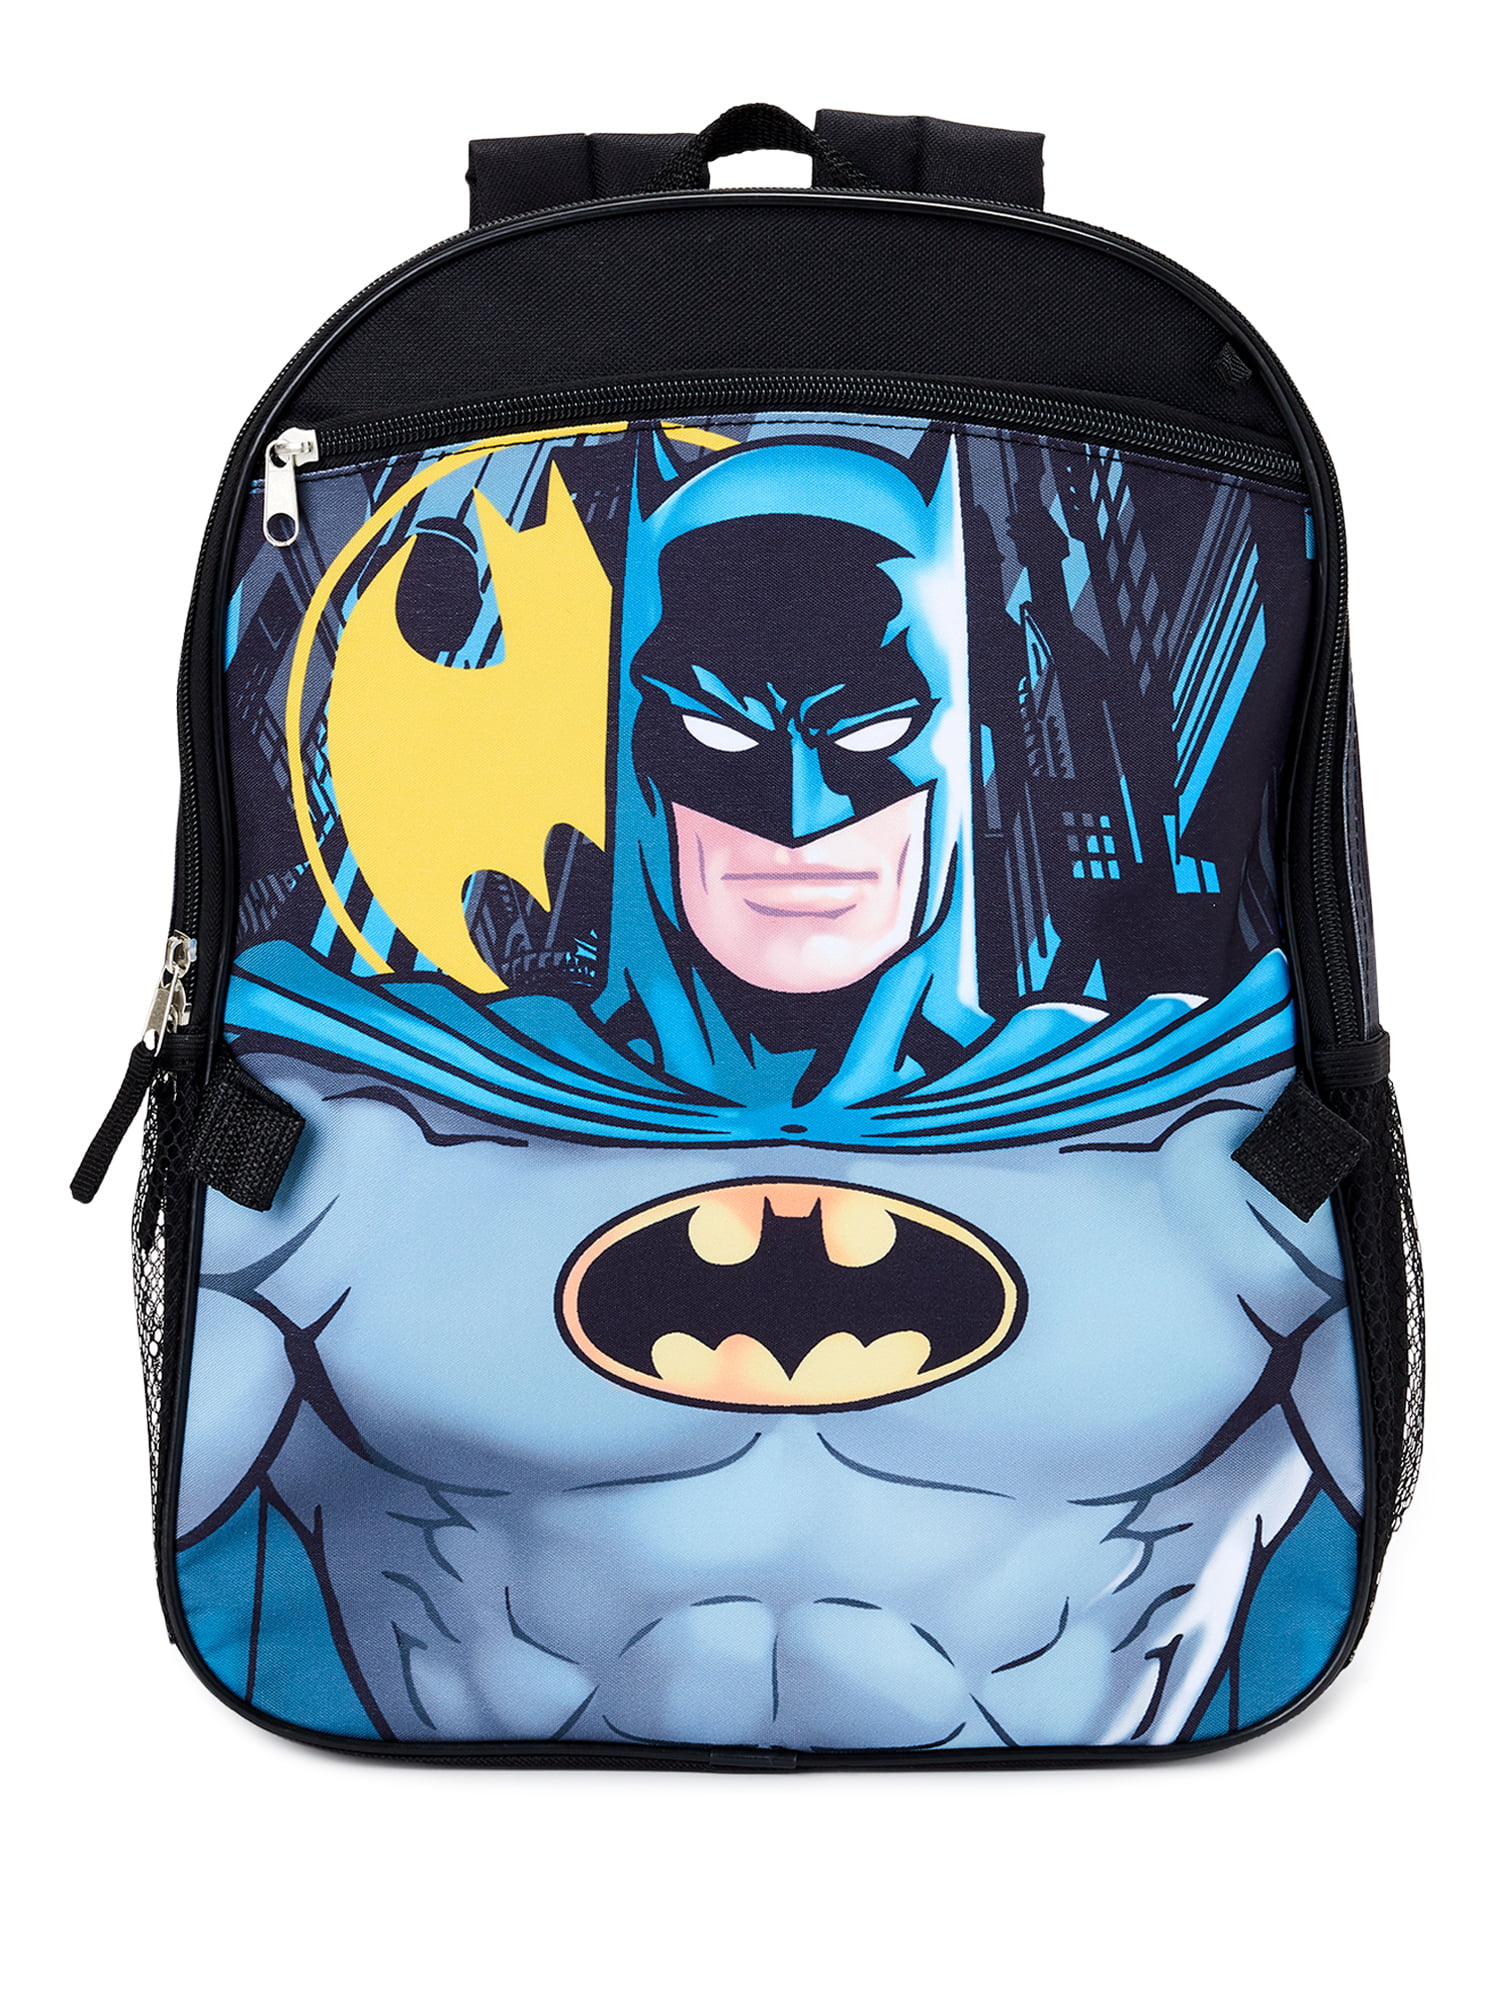 Batman Superhero Backpack 15 inch Backpack